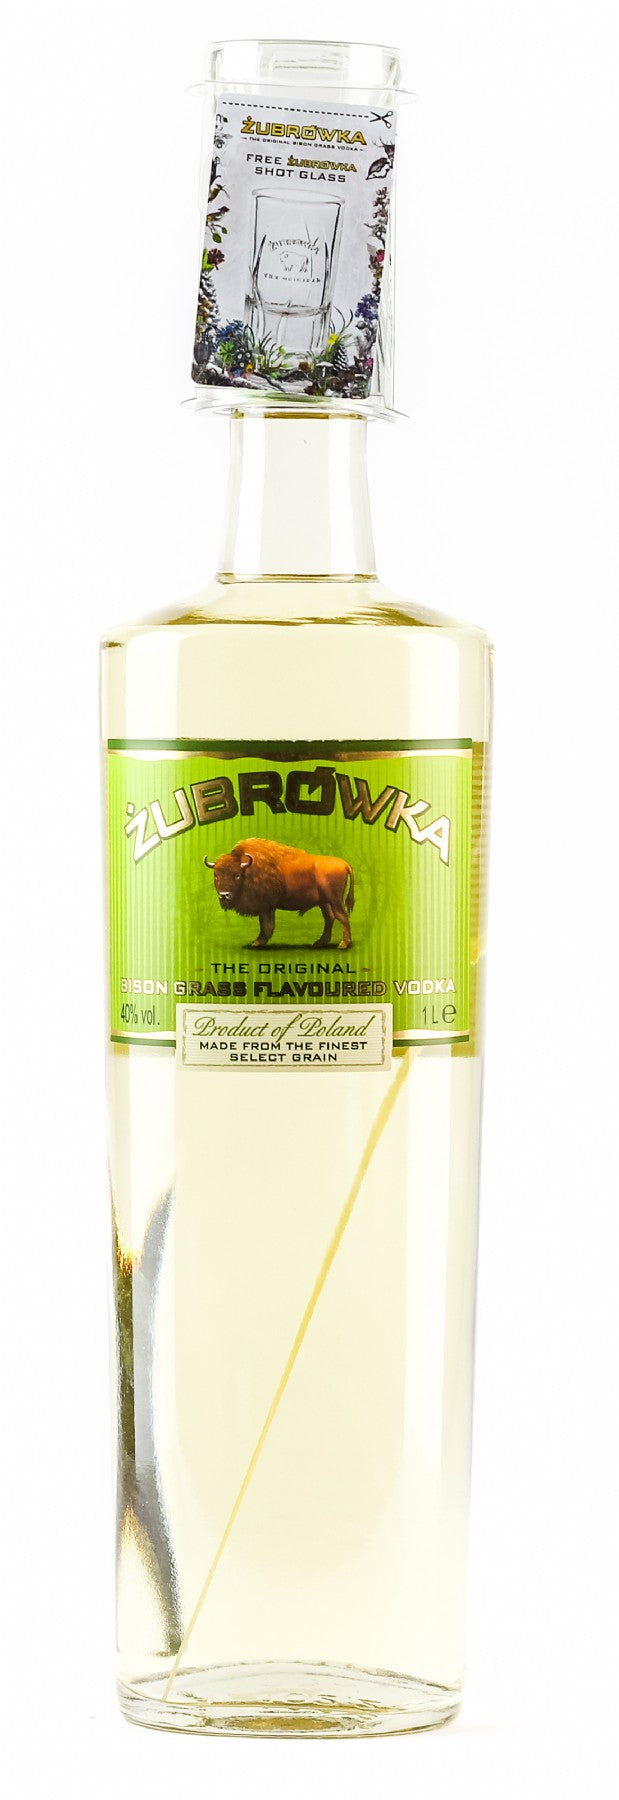 Zubrovka Bison Grass Flavoured Vodka Poland 1lt